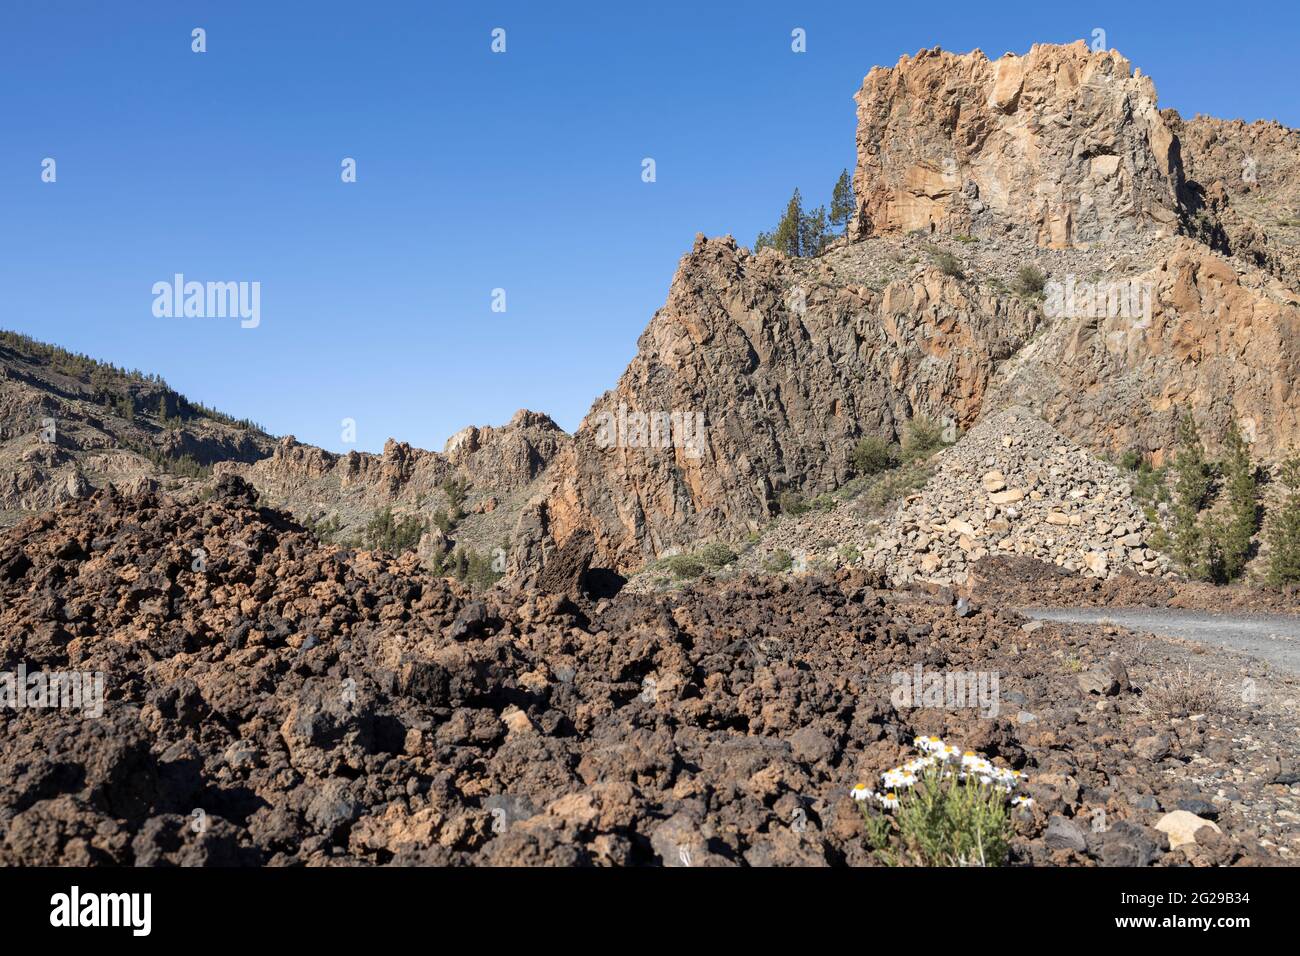 Erstarrter Lavastrom und riesige Felswände in der vulkanischen Landschaft des Nationalparks Las Canadas del Teide, Teneriffa, Kanarische Inseln, Spanien Stockfoto